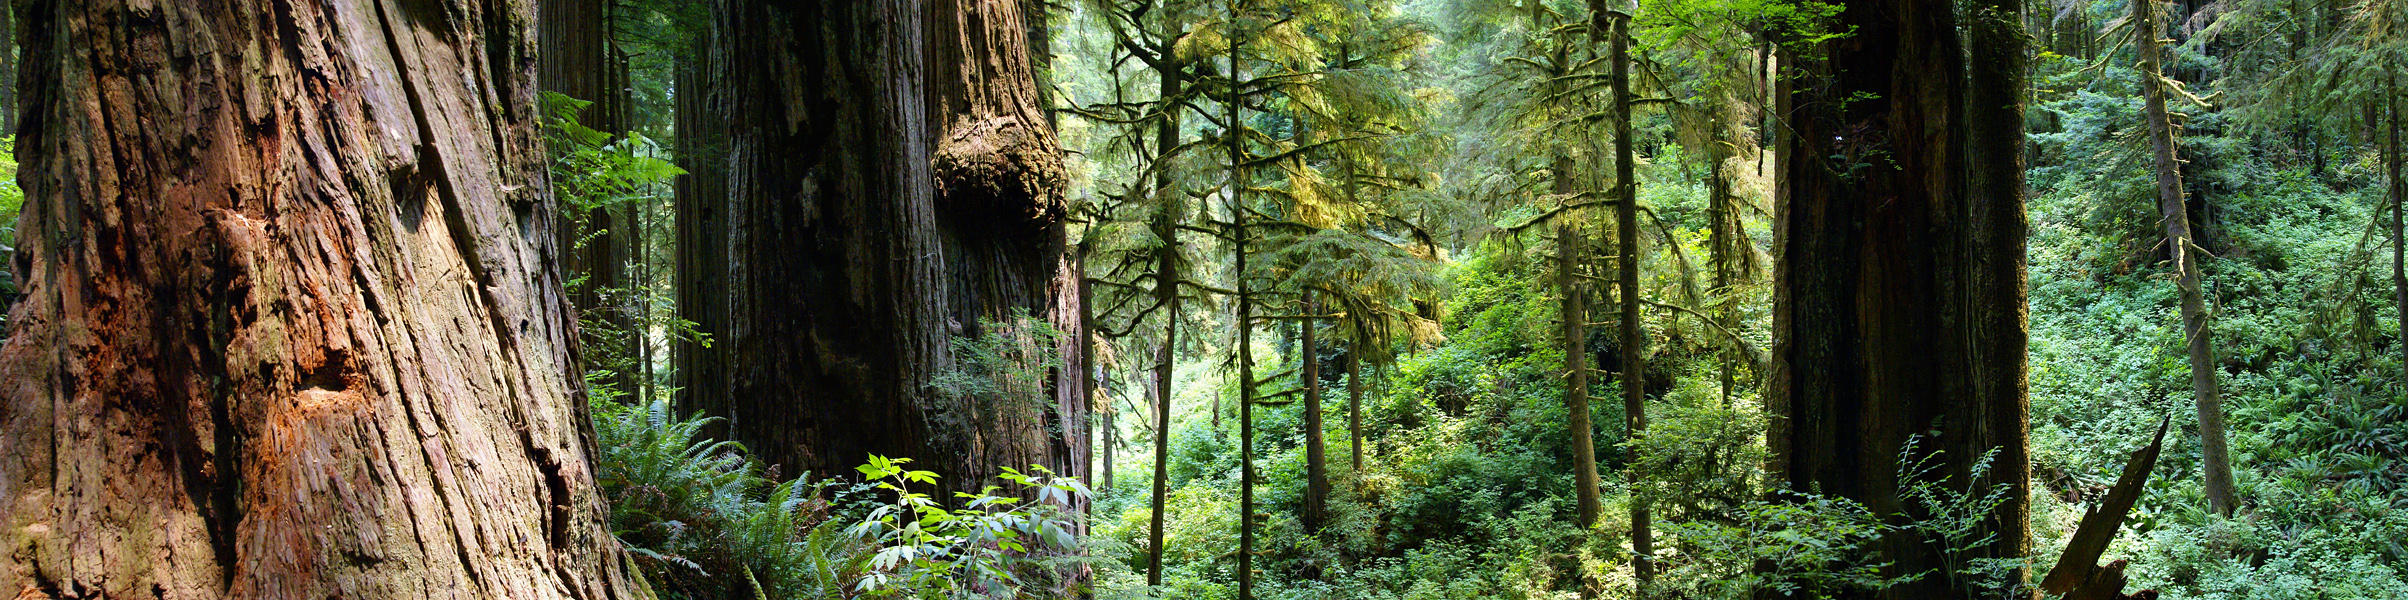 Redwoods in Redwood National Park